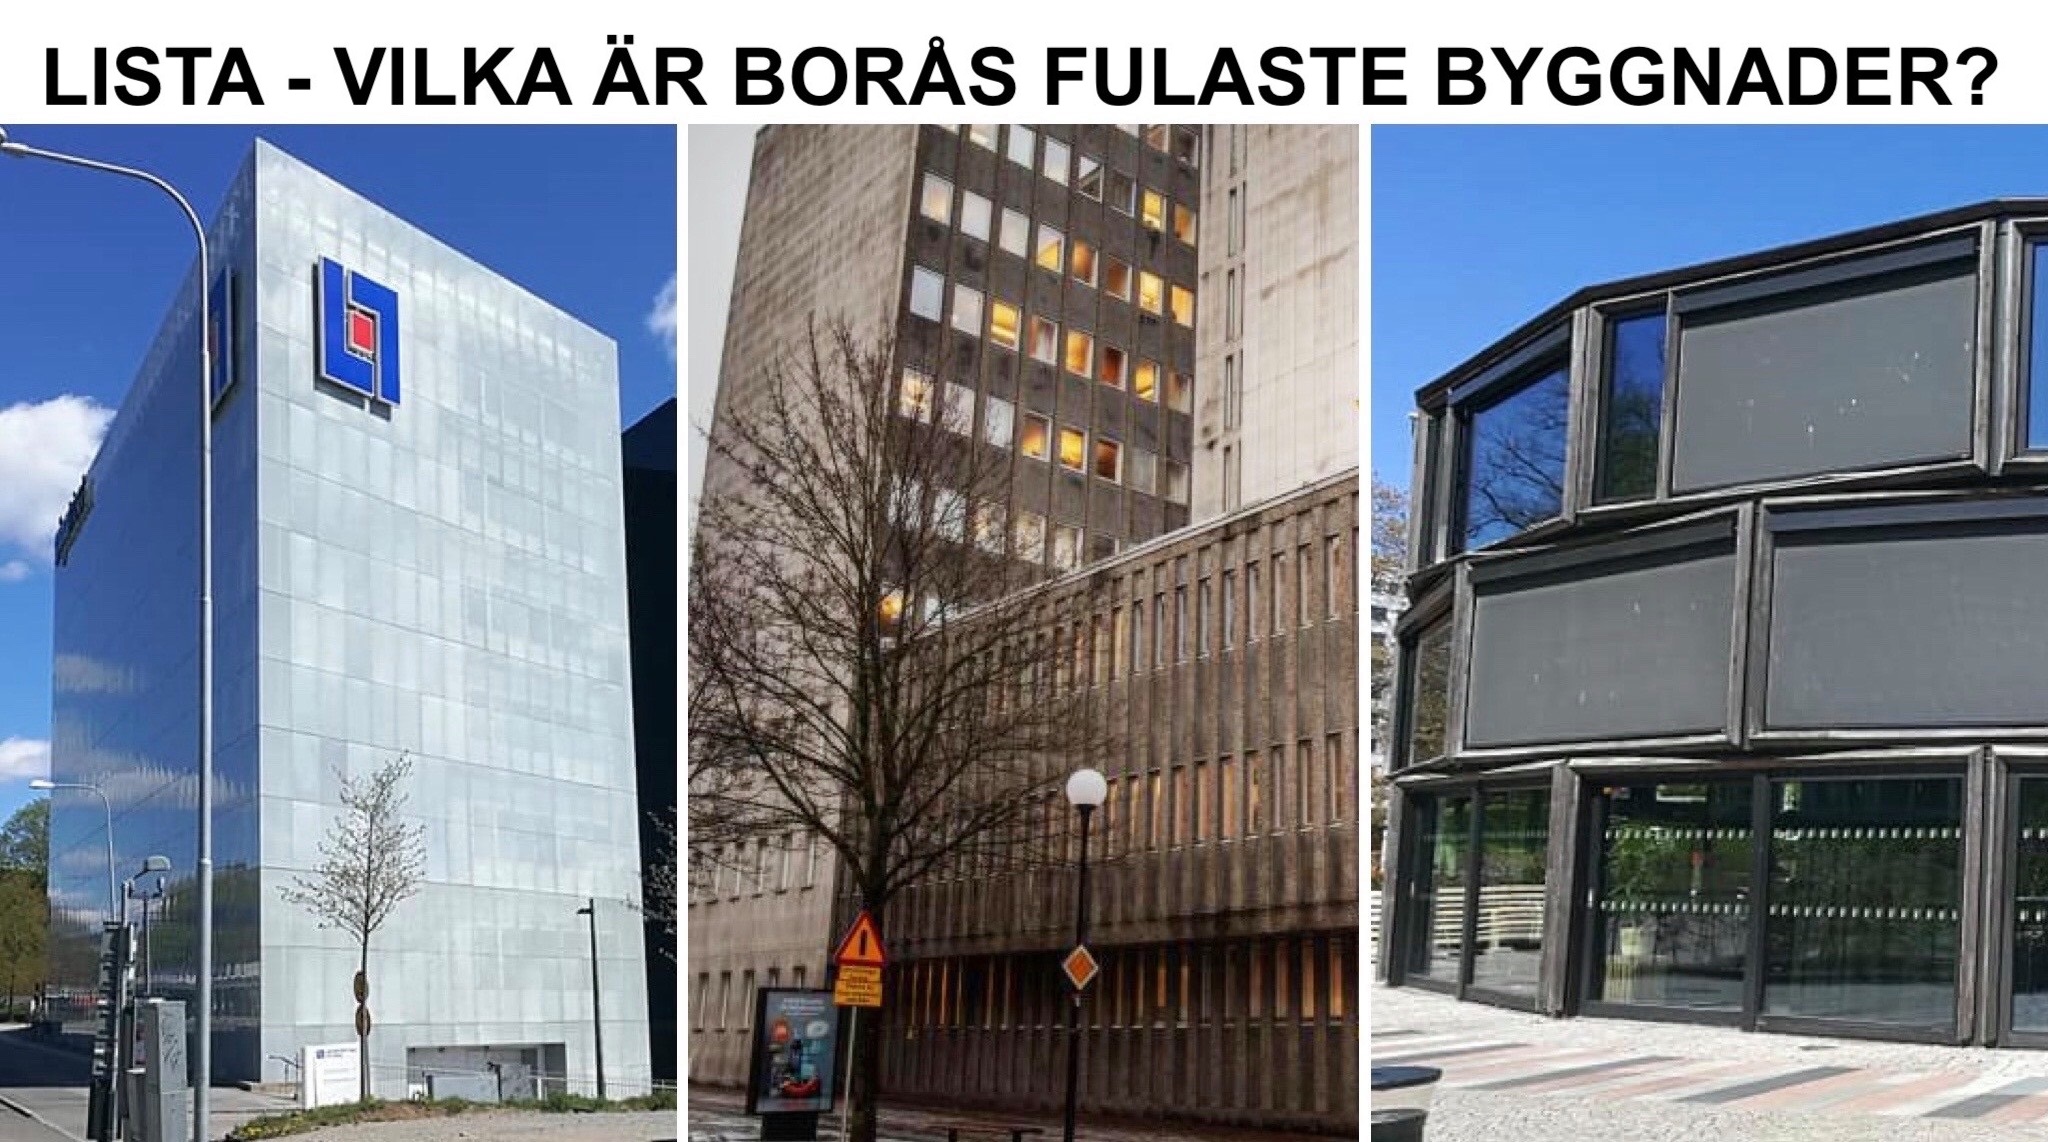 Lista - Borås fulaste byggnader.